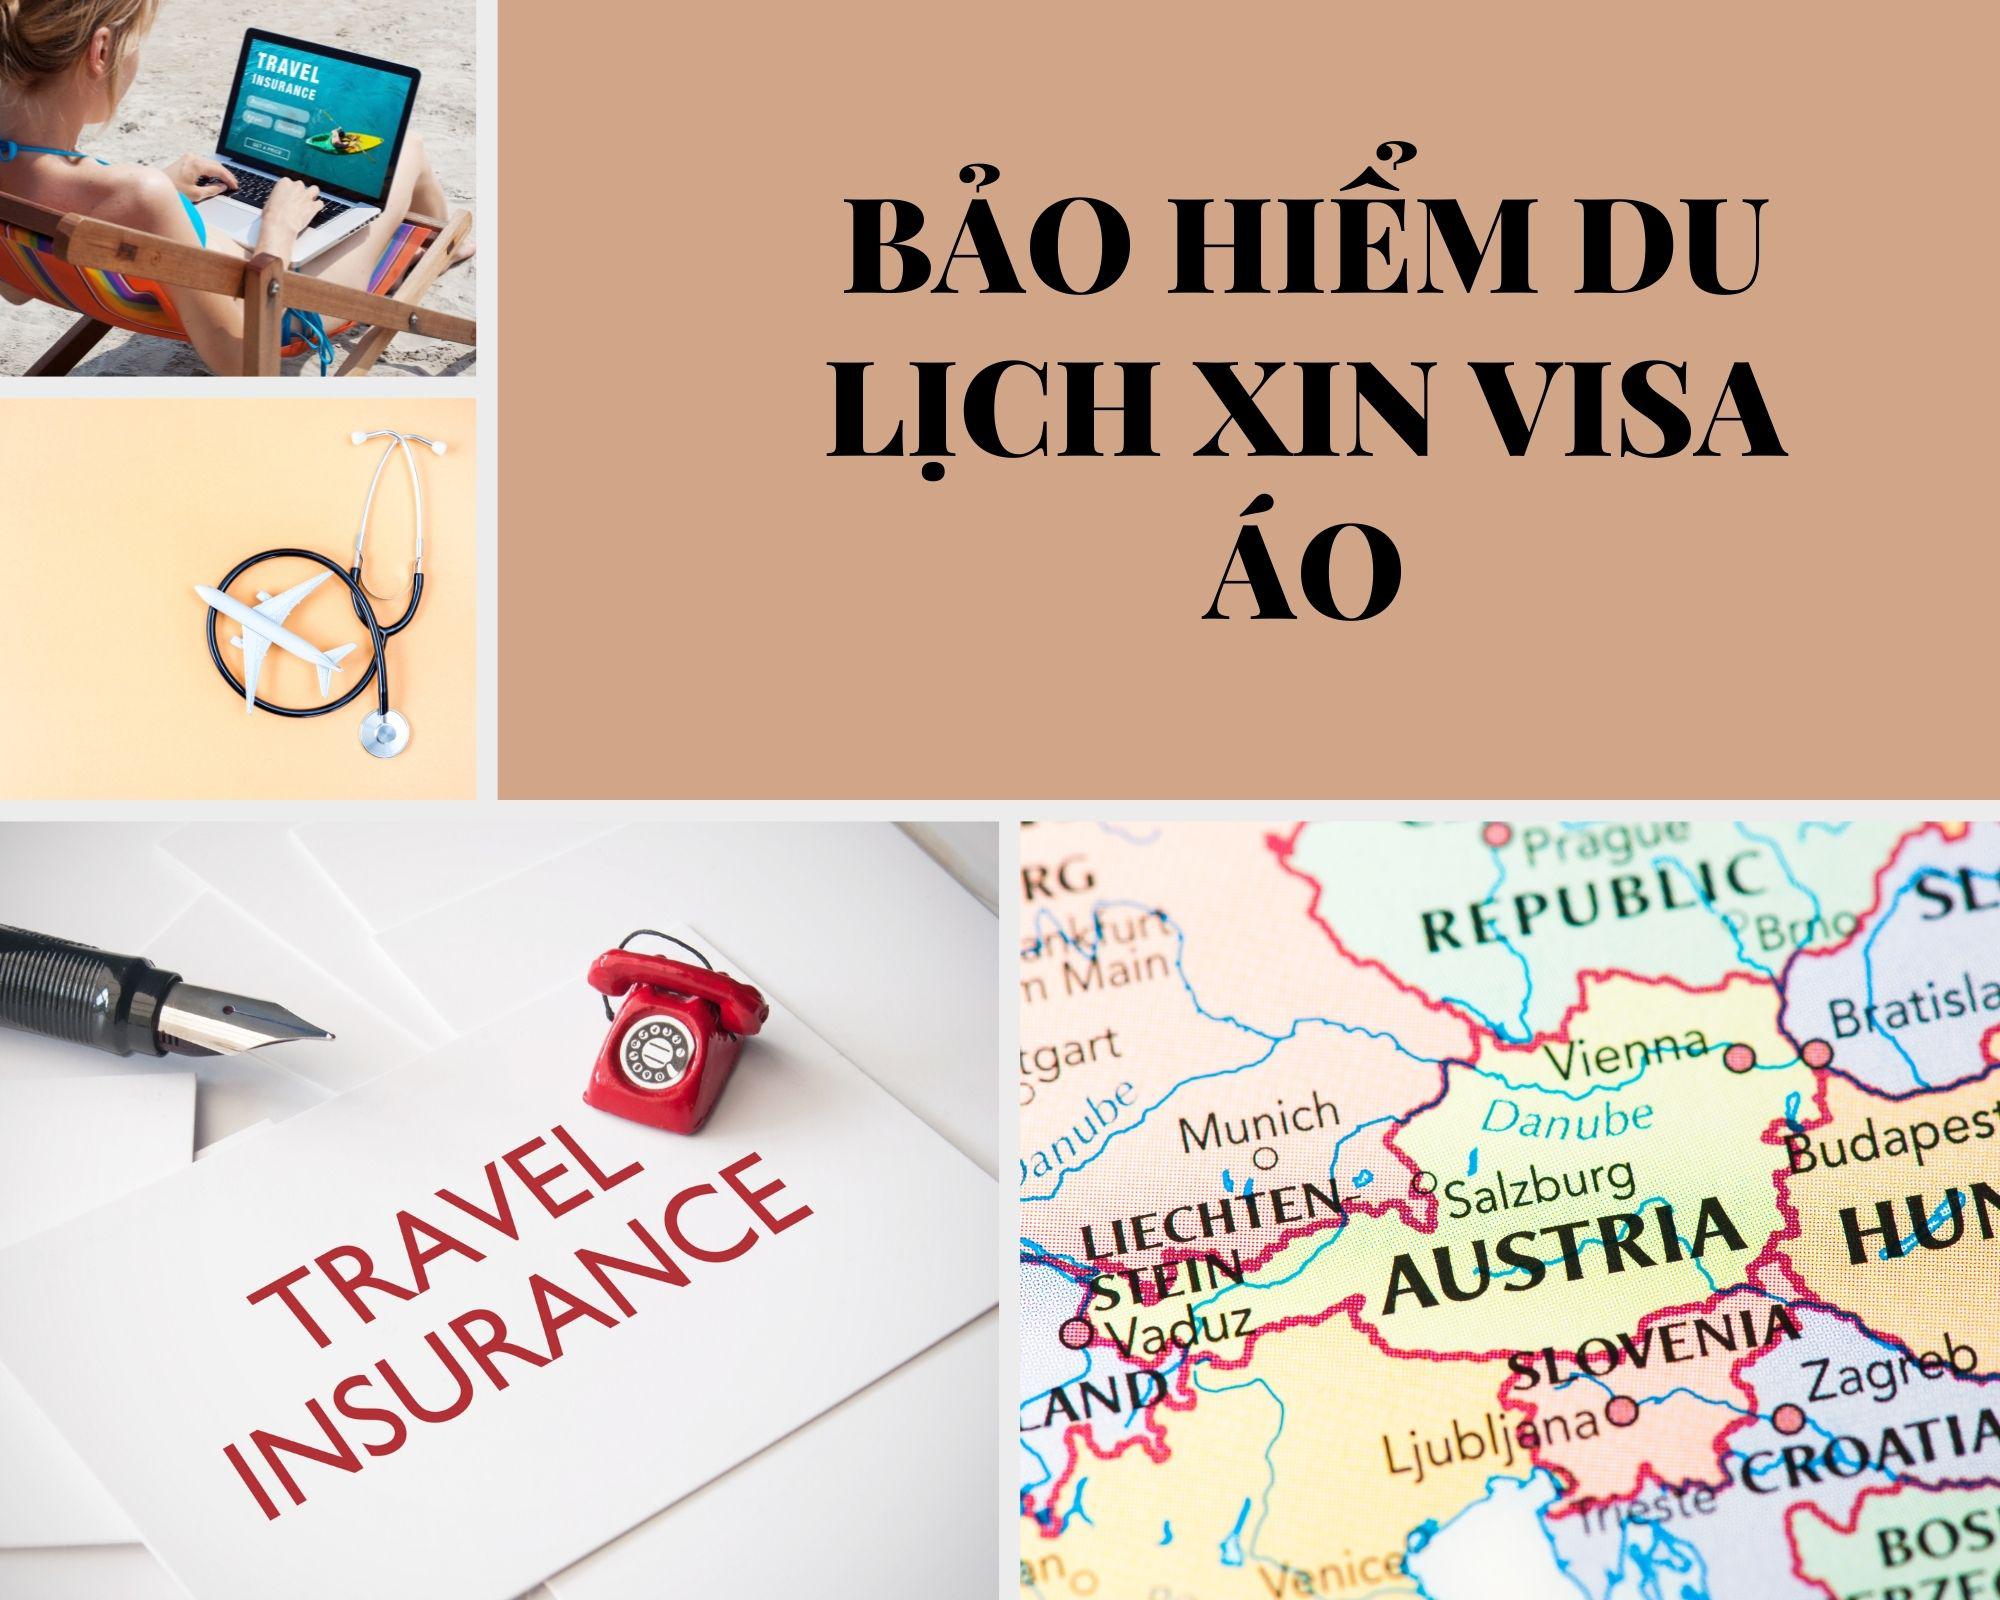 Dịch vụ bảo hiểm du lịch xin visa Áo giá tốt nhất